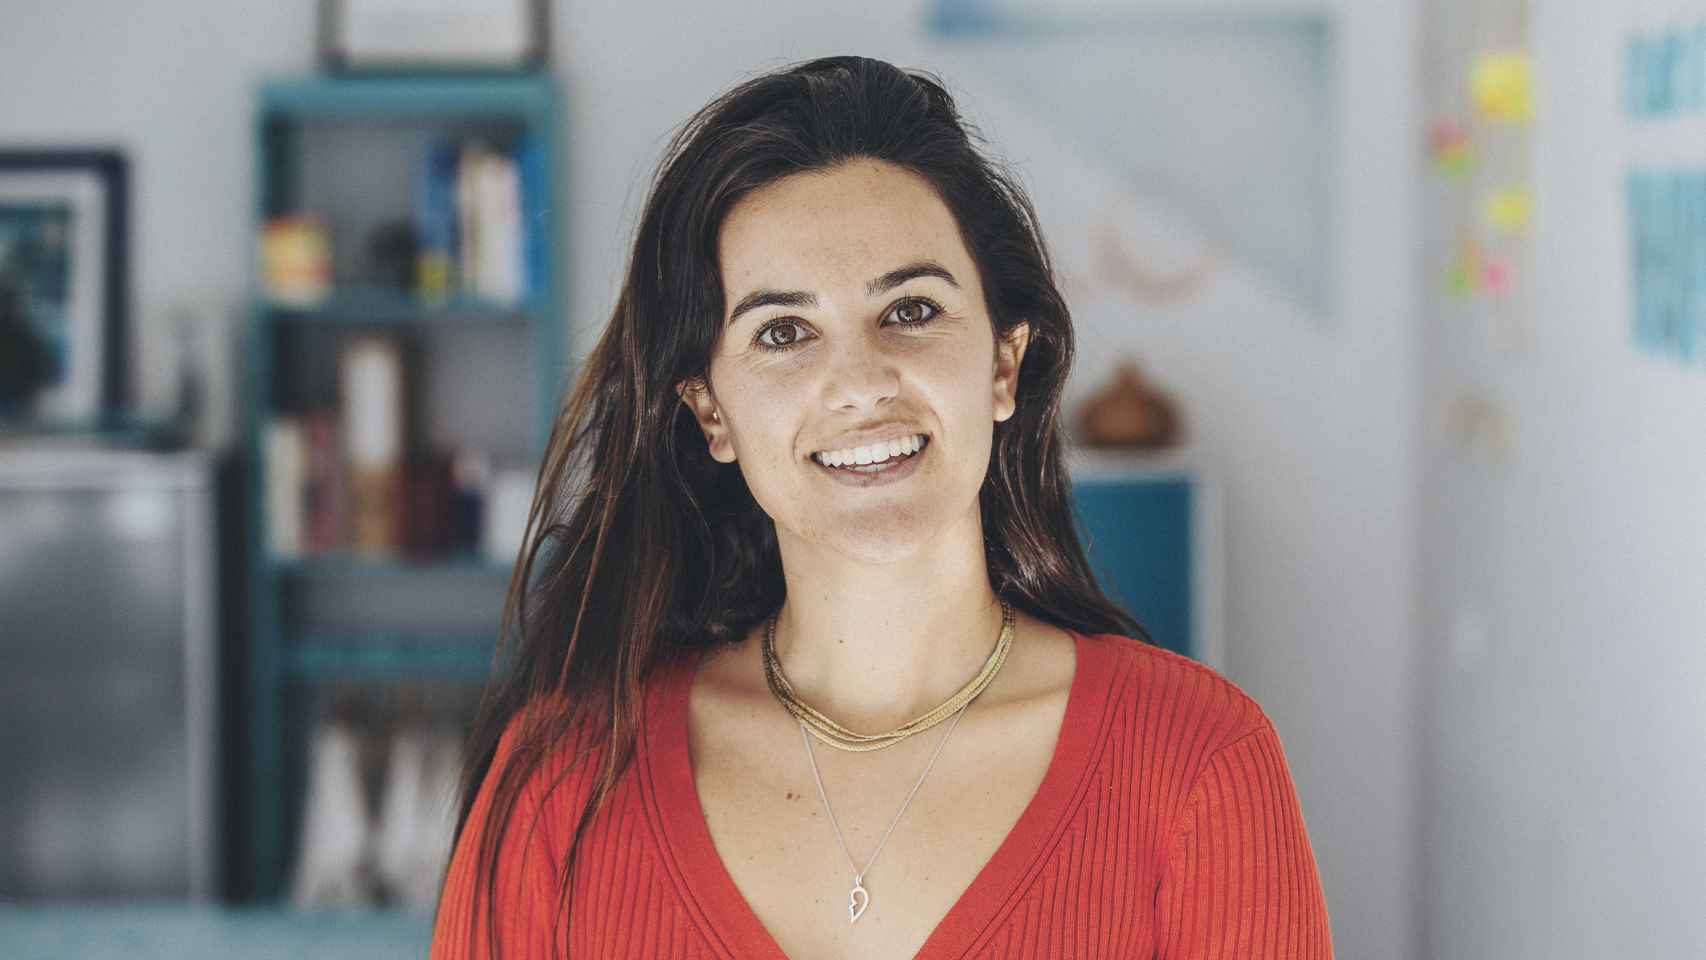 Amaia Rodríguez, CEO de Gravity Wave, es la única mujer finalista en los premios Plastics Recycling Awards Europe 2023, que se fallarán el próximo 11 de mayo en Ámsterdam.